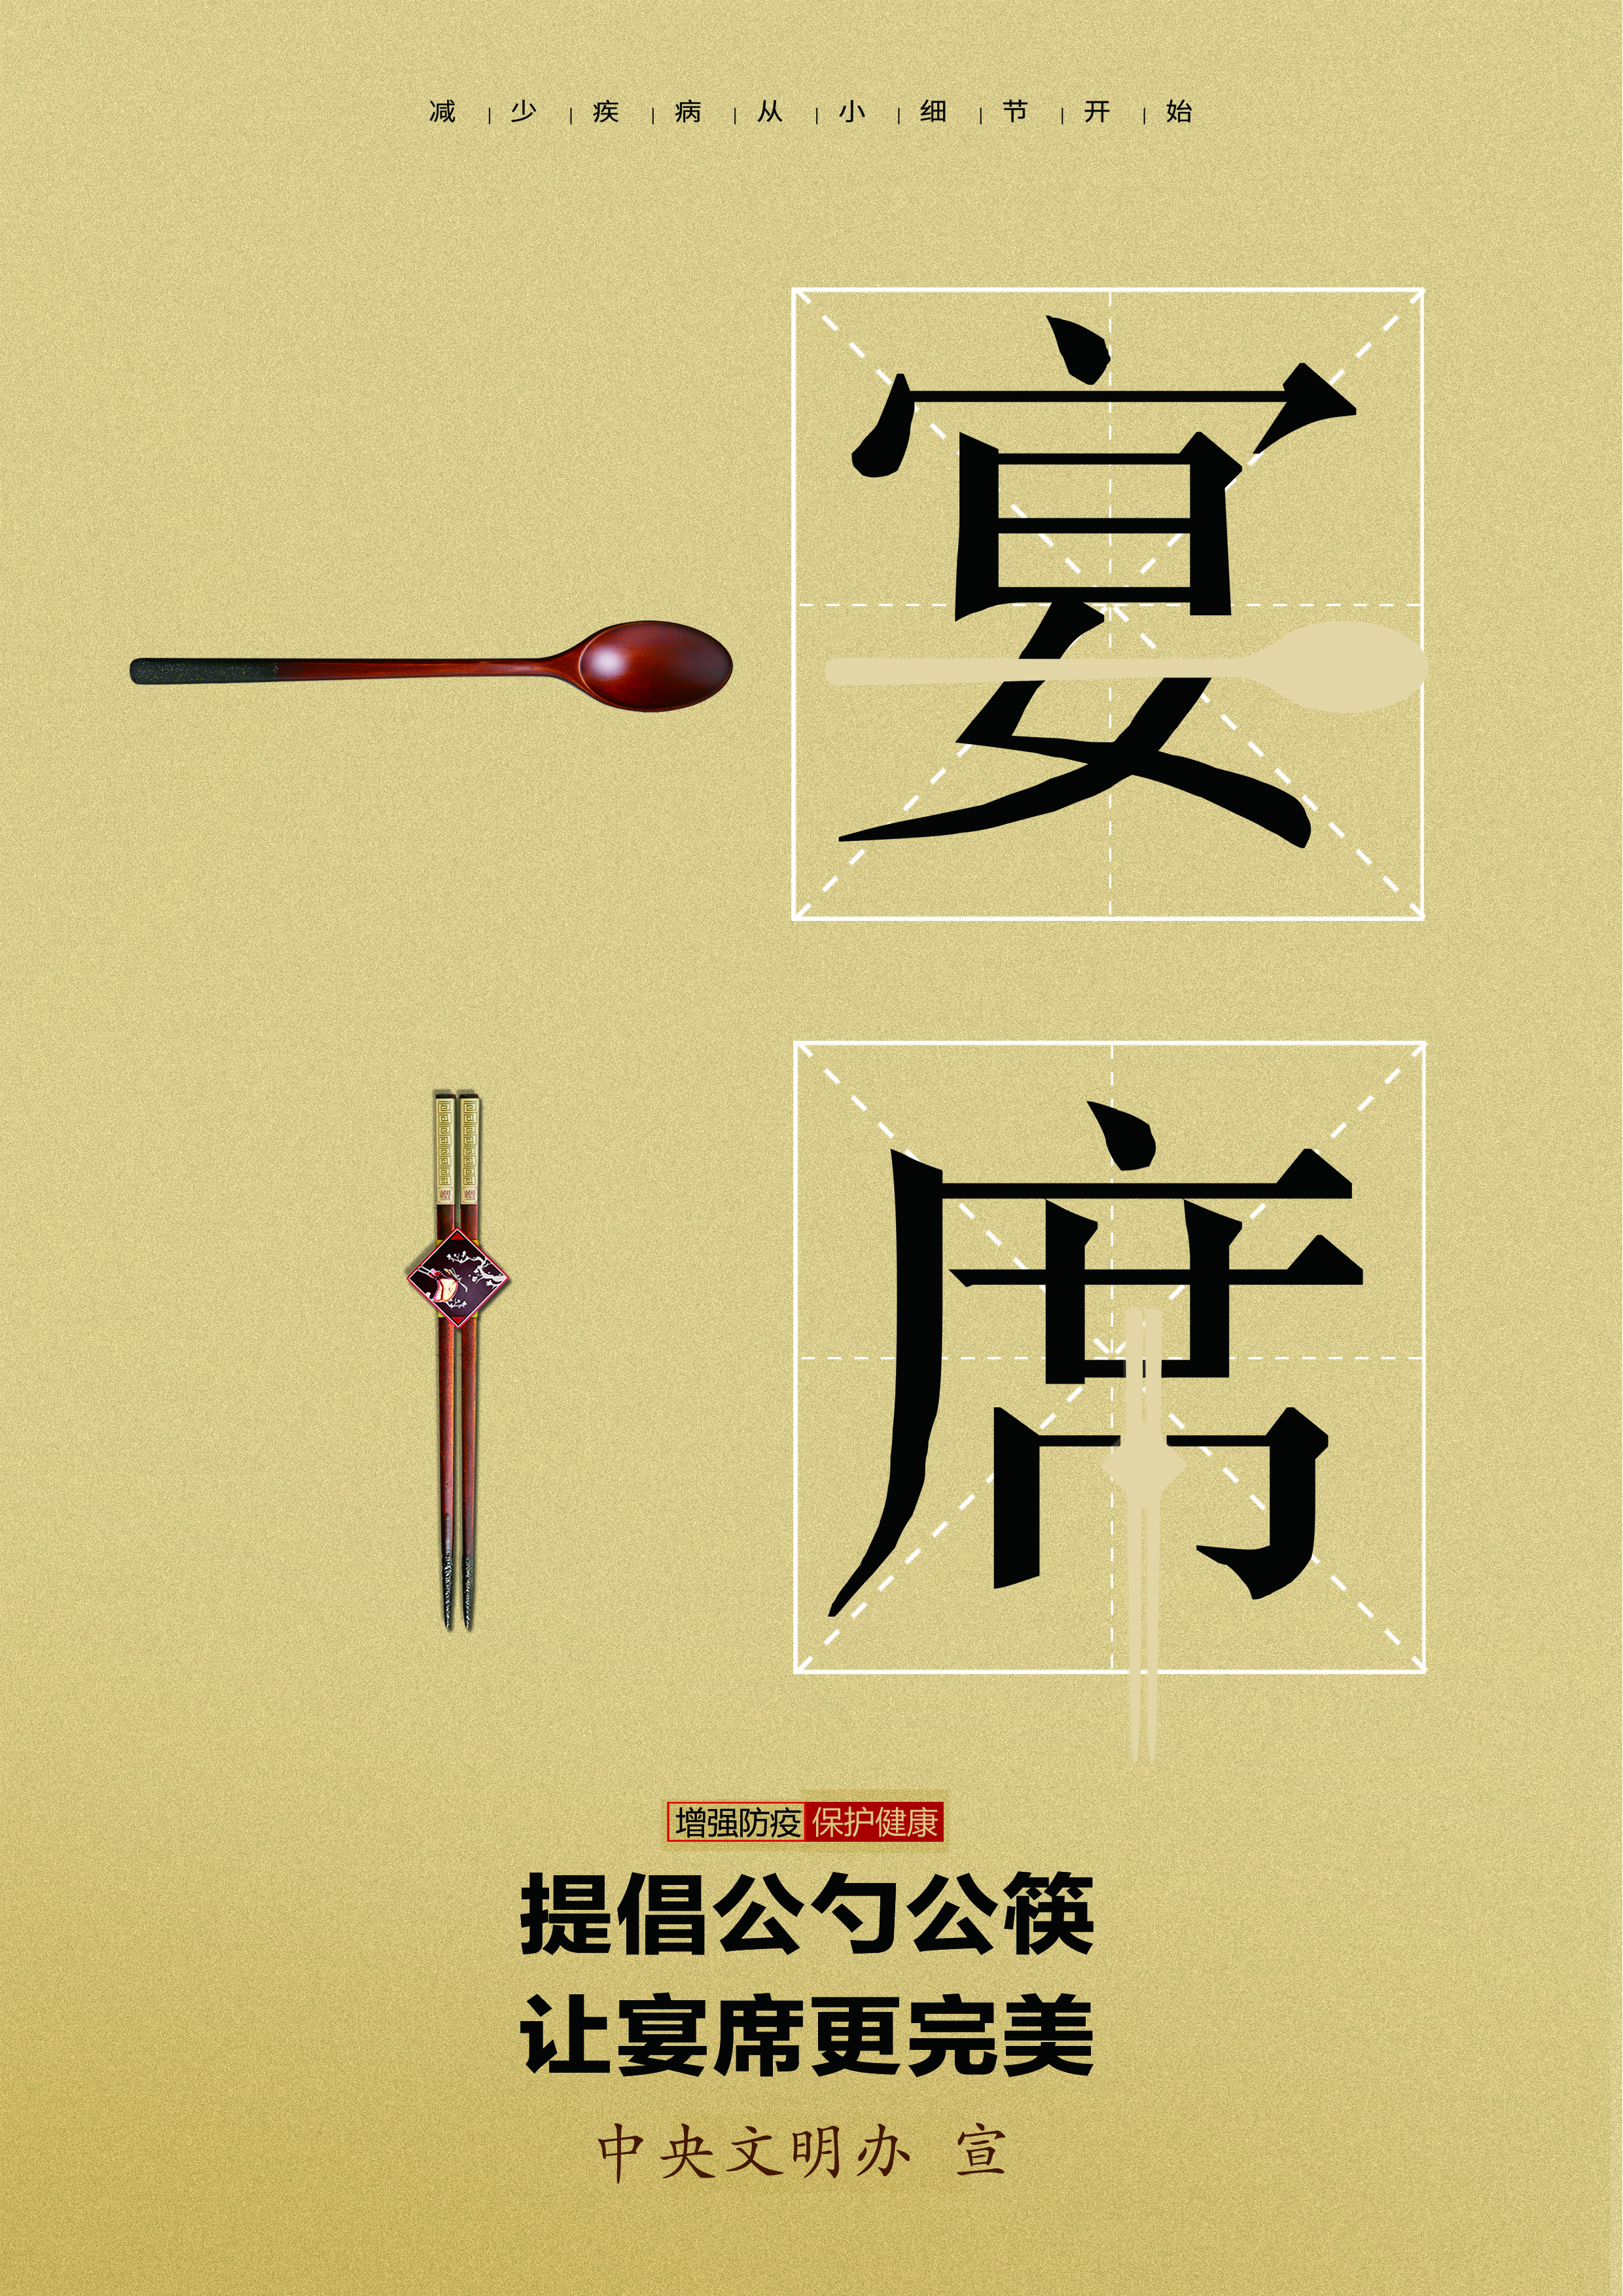 讲文明树新风公益广告：提倡公勺公筷 让宴席更完美